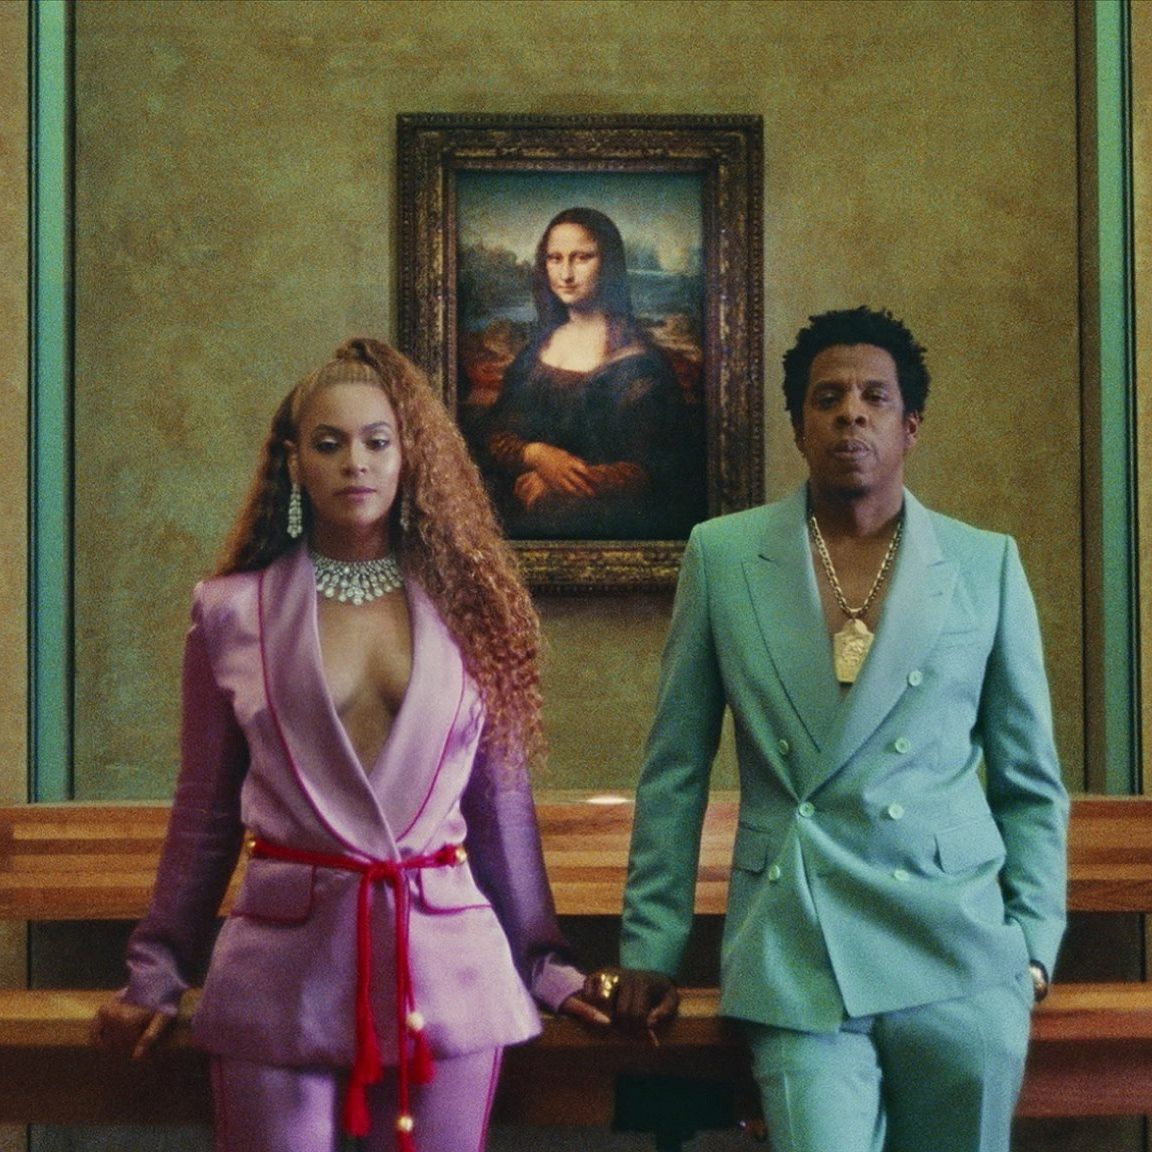 Xúc động nhìn lại hành trình âm nhạc Beyoncé - Jay Z: Từ hôm nay hãy gọi họ là triều đại mới! - Ảnh 10.